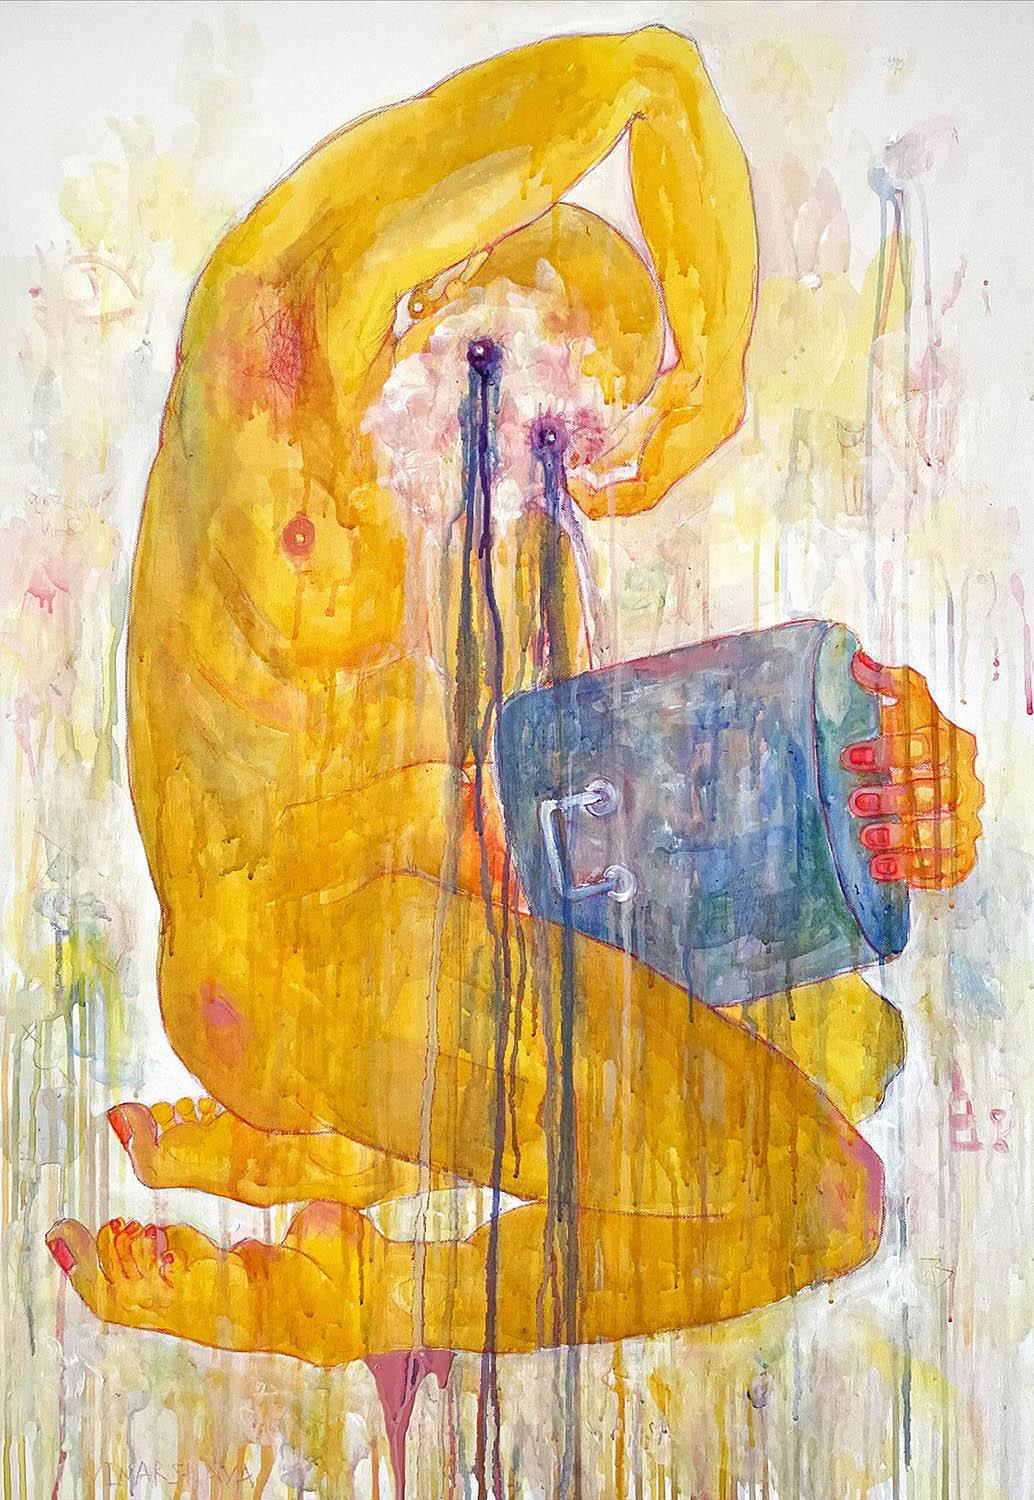 Daria Vinarskaya, Pot holder, canvas, acrylic, watercolor pencils, 100x80 cm